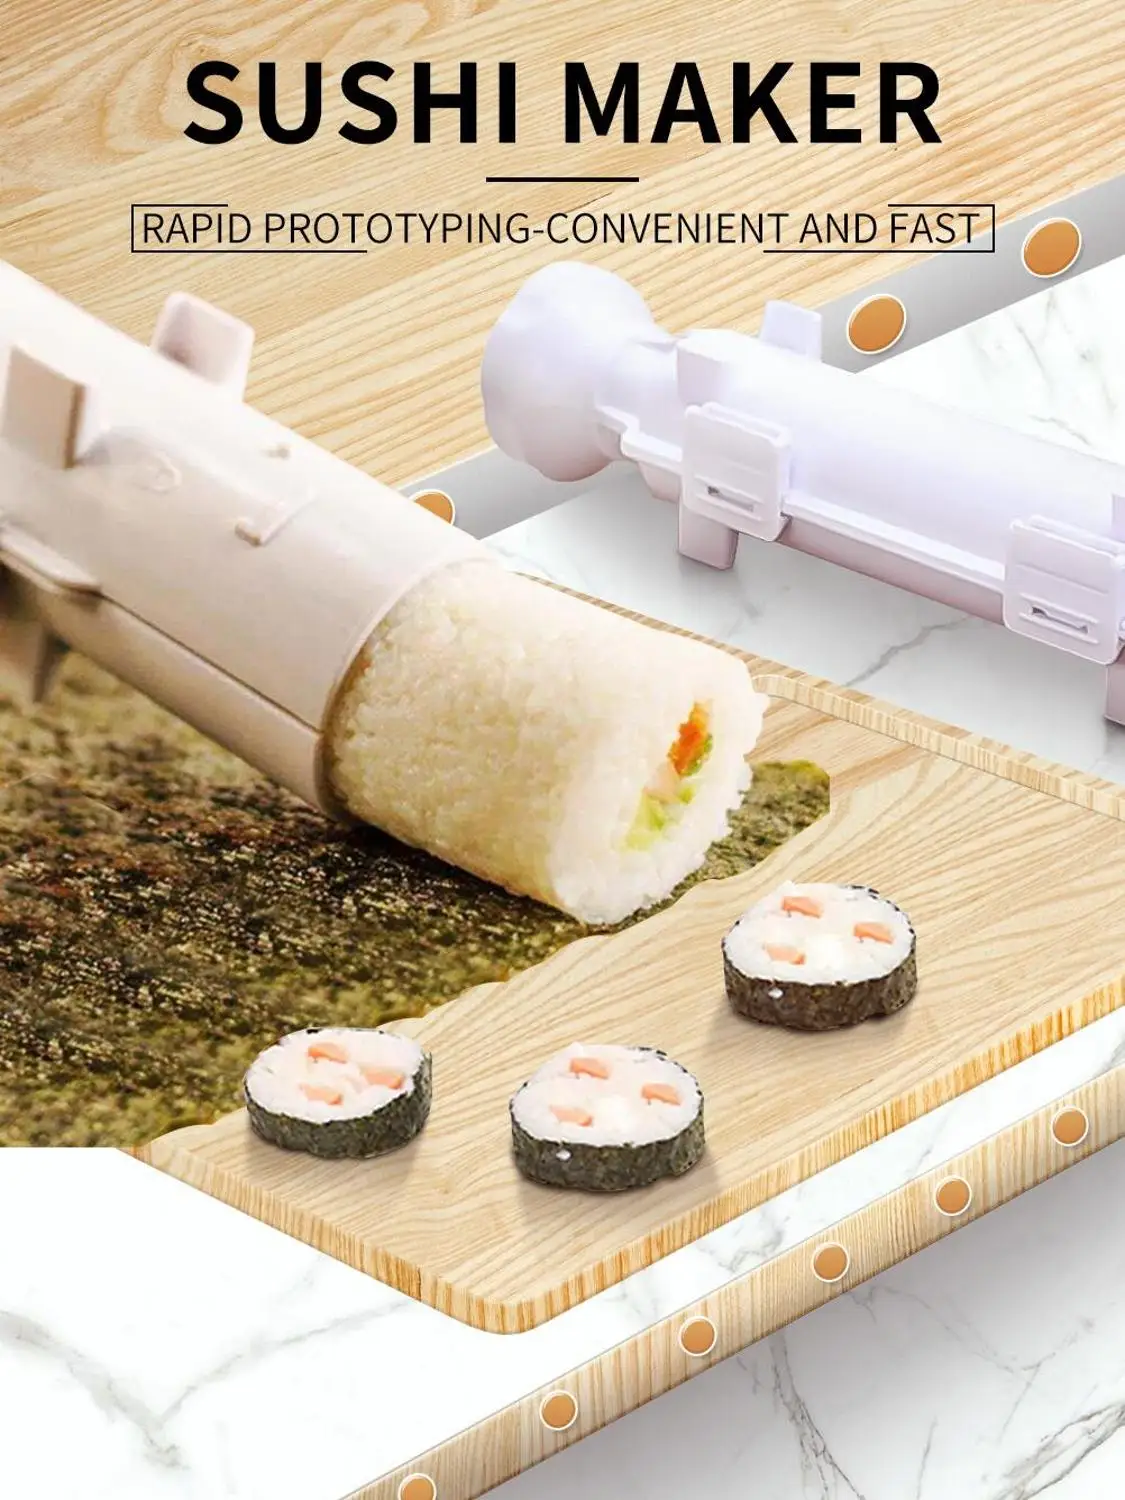 

Форма-Роллер для суши из пищевого пластика, устройство для приготовления суши, риса, овощей, мяса, набор для самостоятельного приготовления ...